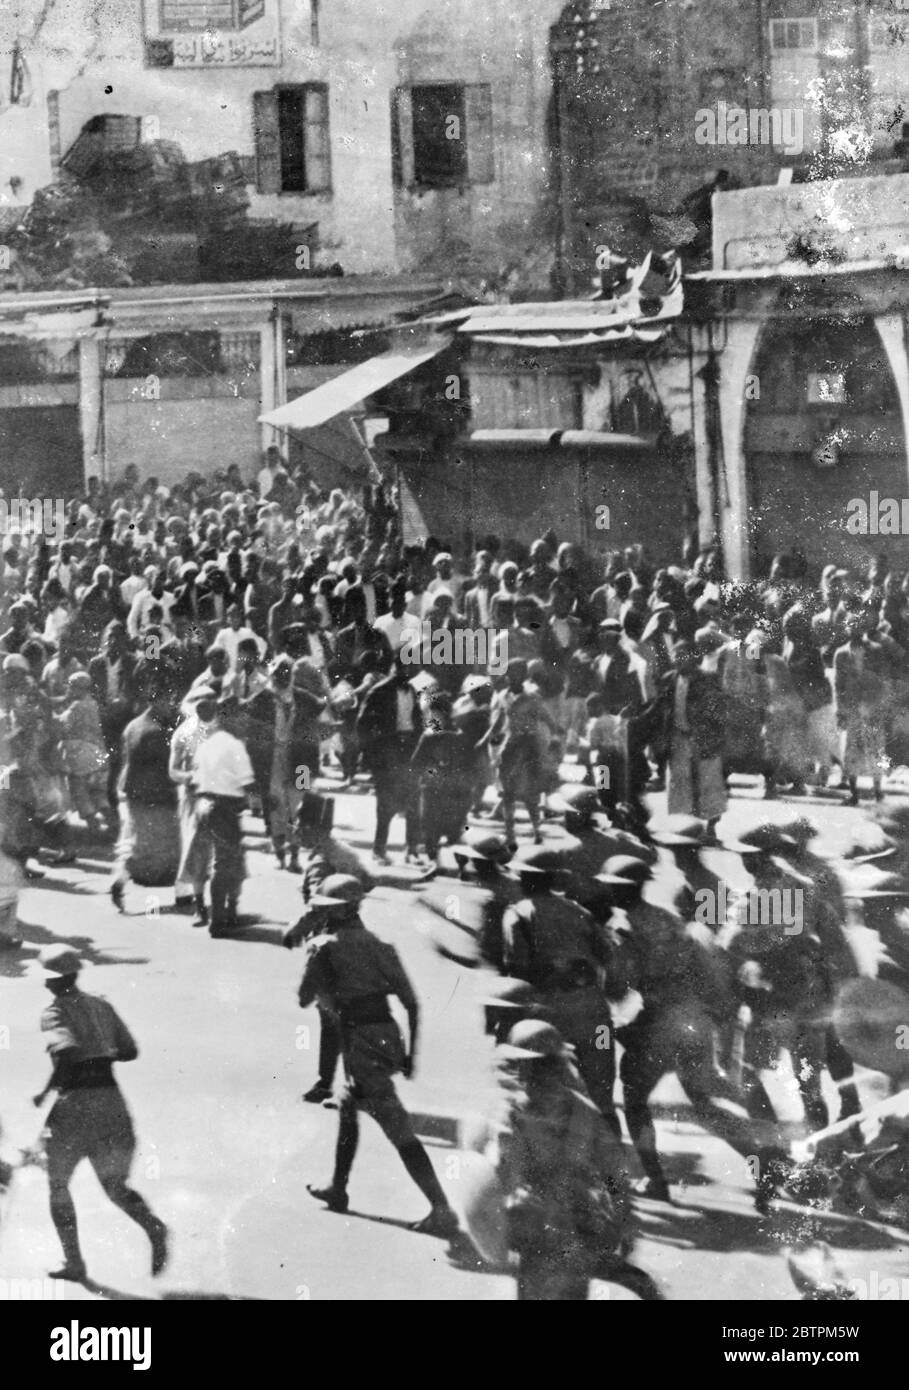 La police britannique attaque la foule arabe à Jaffa . Pire situation . Les deux parties ont subi des pertes lorsque des manifestants arabes sont entrés en conflit avec la police britannique près de la mosquée de Jaffa . La situation est maintenant si grave à Jaffa qu'un couvre-feu de 7 heures a été imposé. Quiconque vu dans les rues après cette heure risque d'être abattu par des patrouilles . Photos : la police britannique avance sur la foule arabe près de la mosquée de Jaffa . 11 juin 1936 Banque D'Images